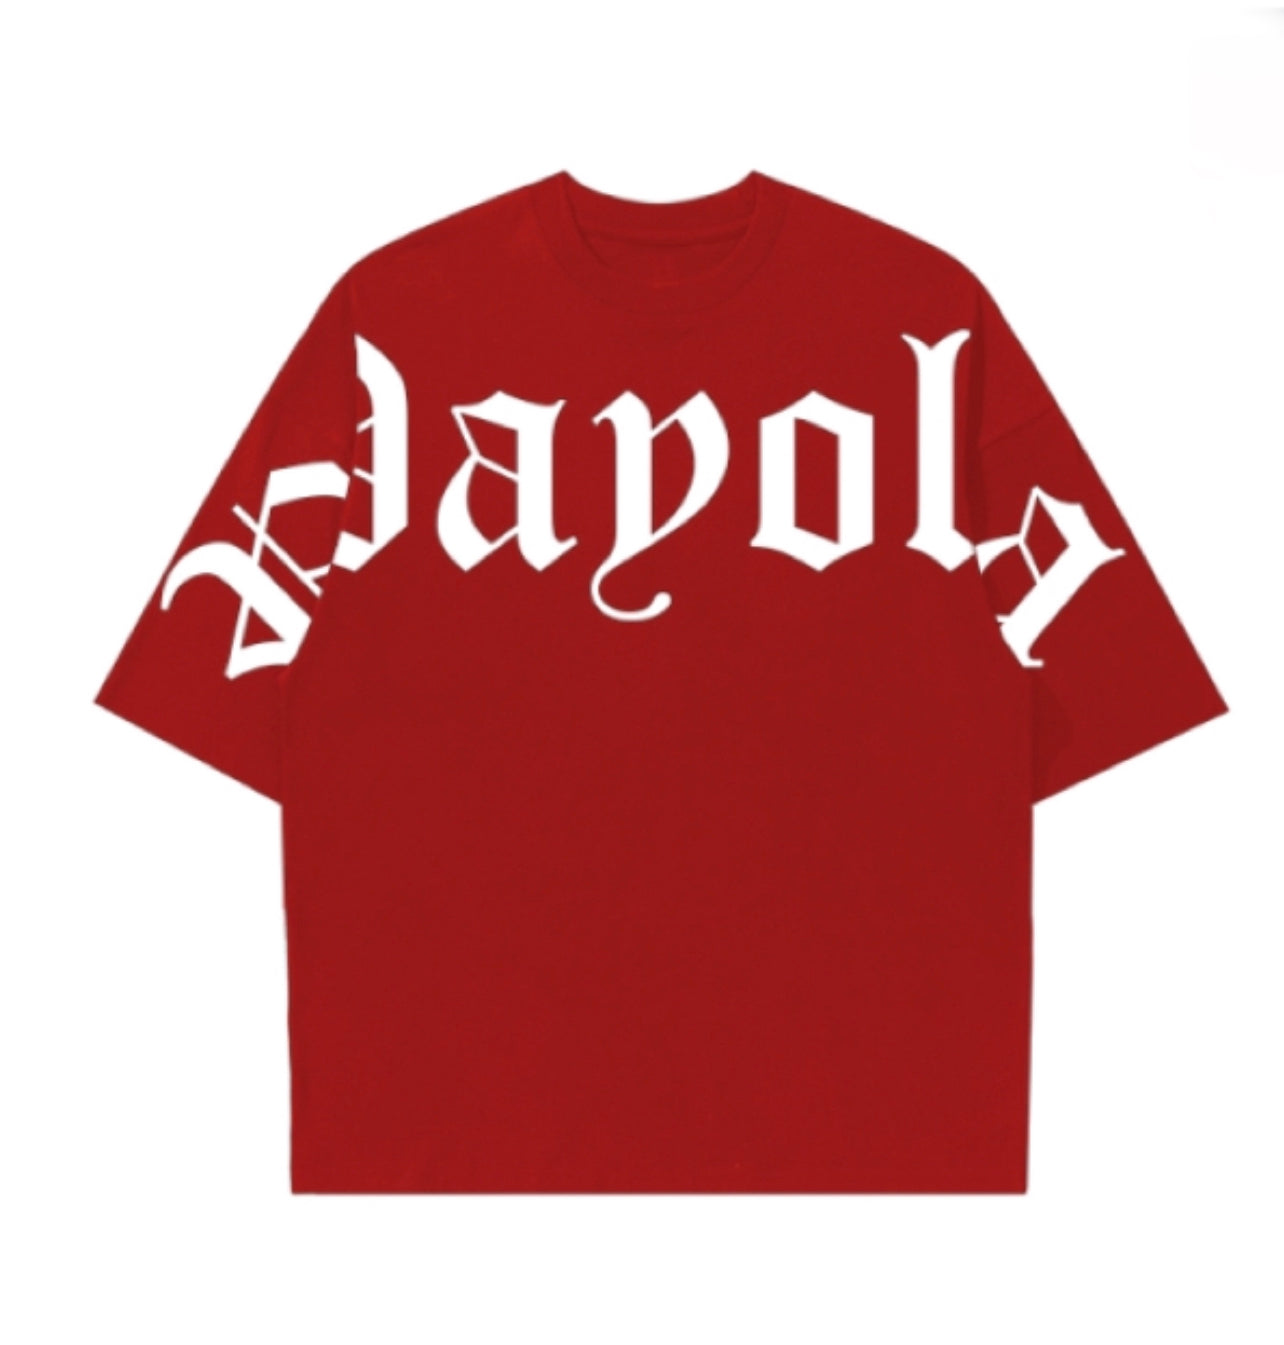 Payola Old English Shirt (Red)